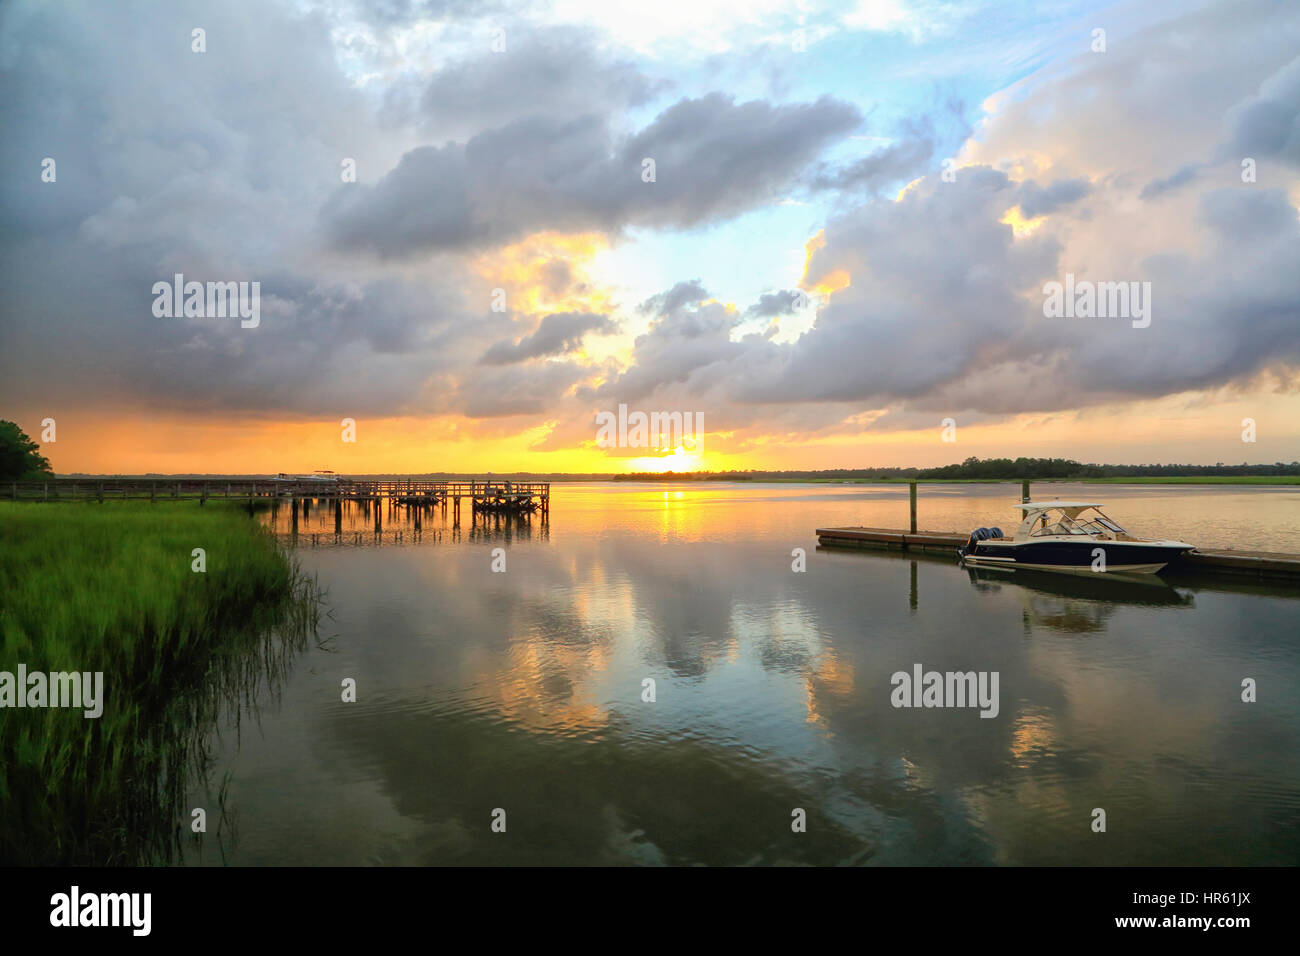 A dramatic sunset through storm clouds over the Kiawah River on Kiawah Island, South Carolina. Stock Photo